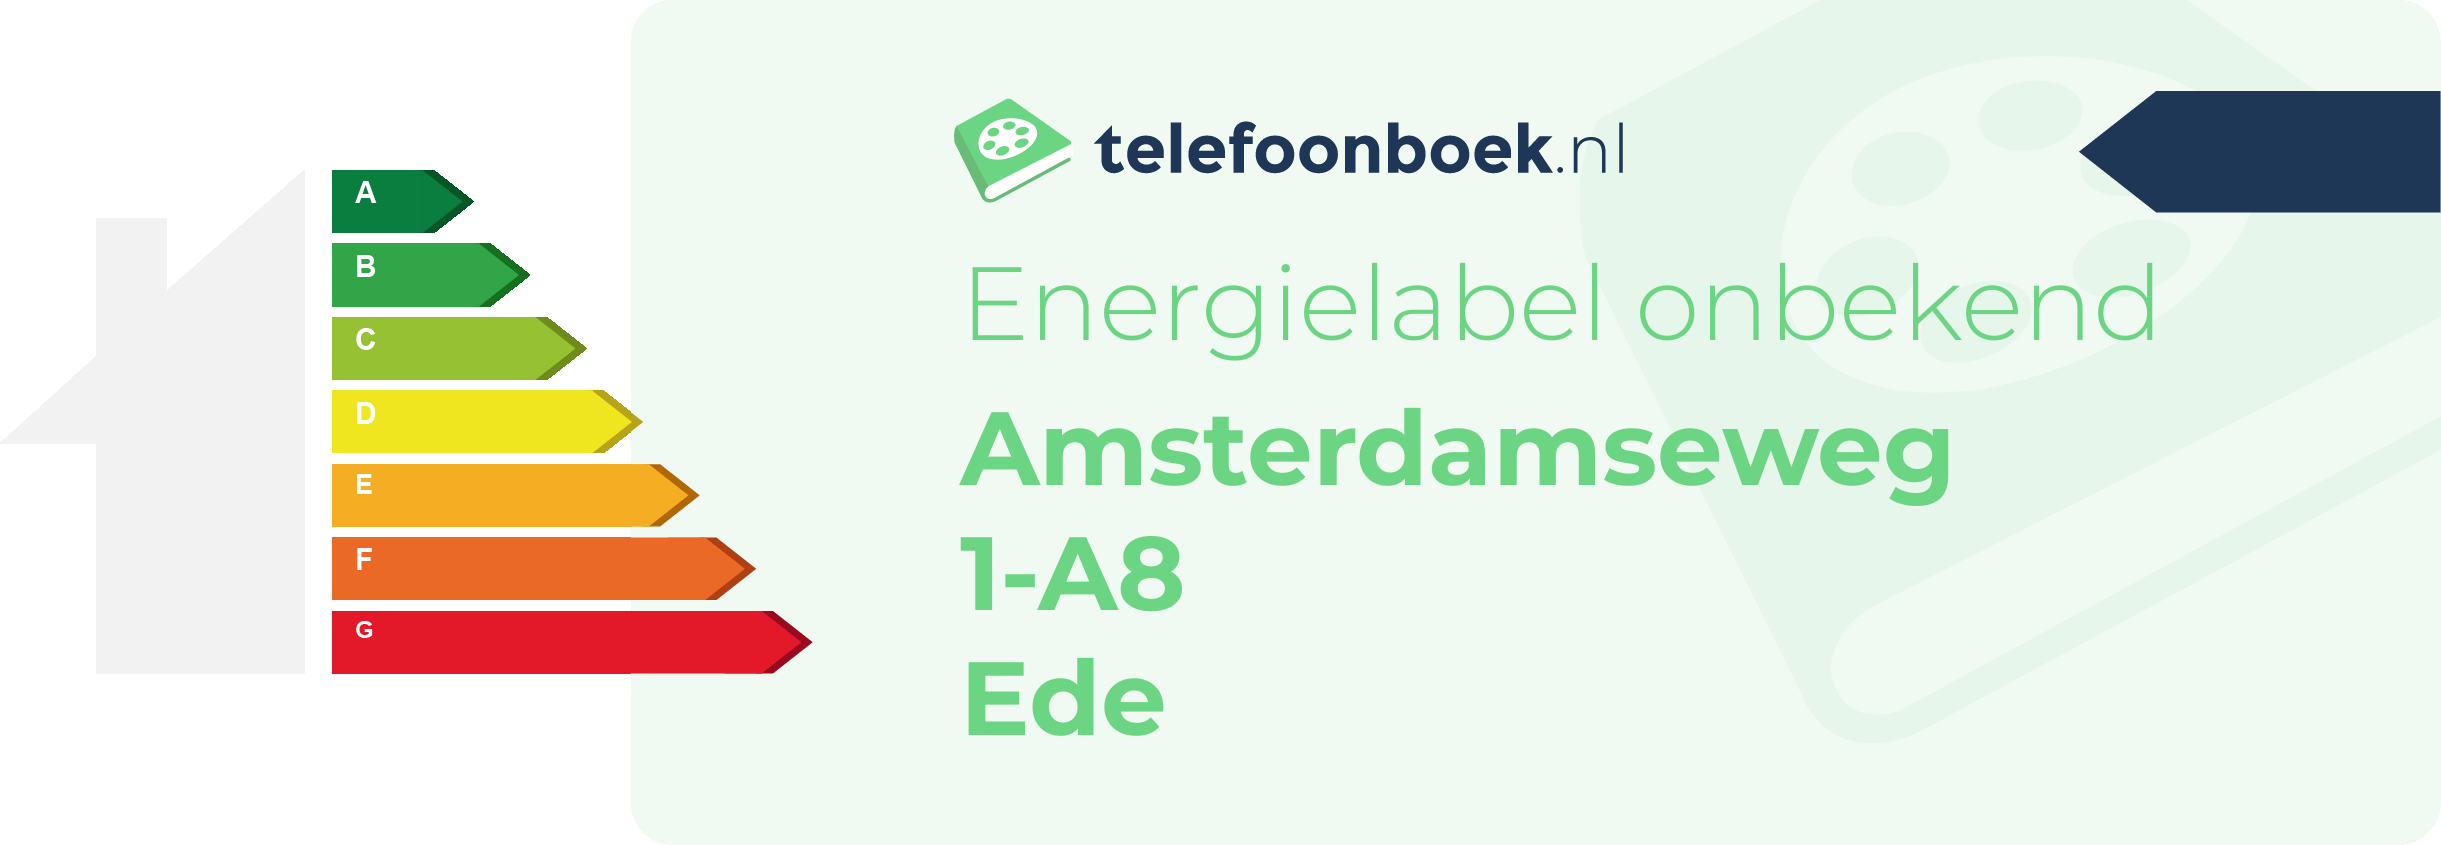 Energielabel Amsterdamseweg 1-A8 Ede